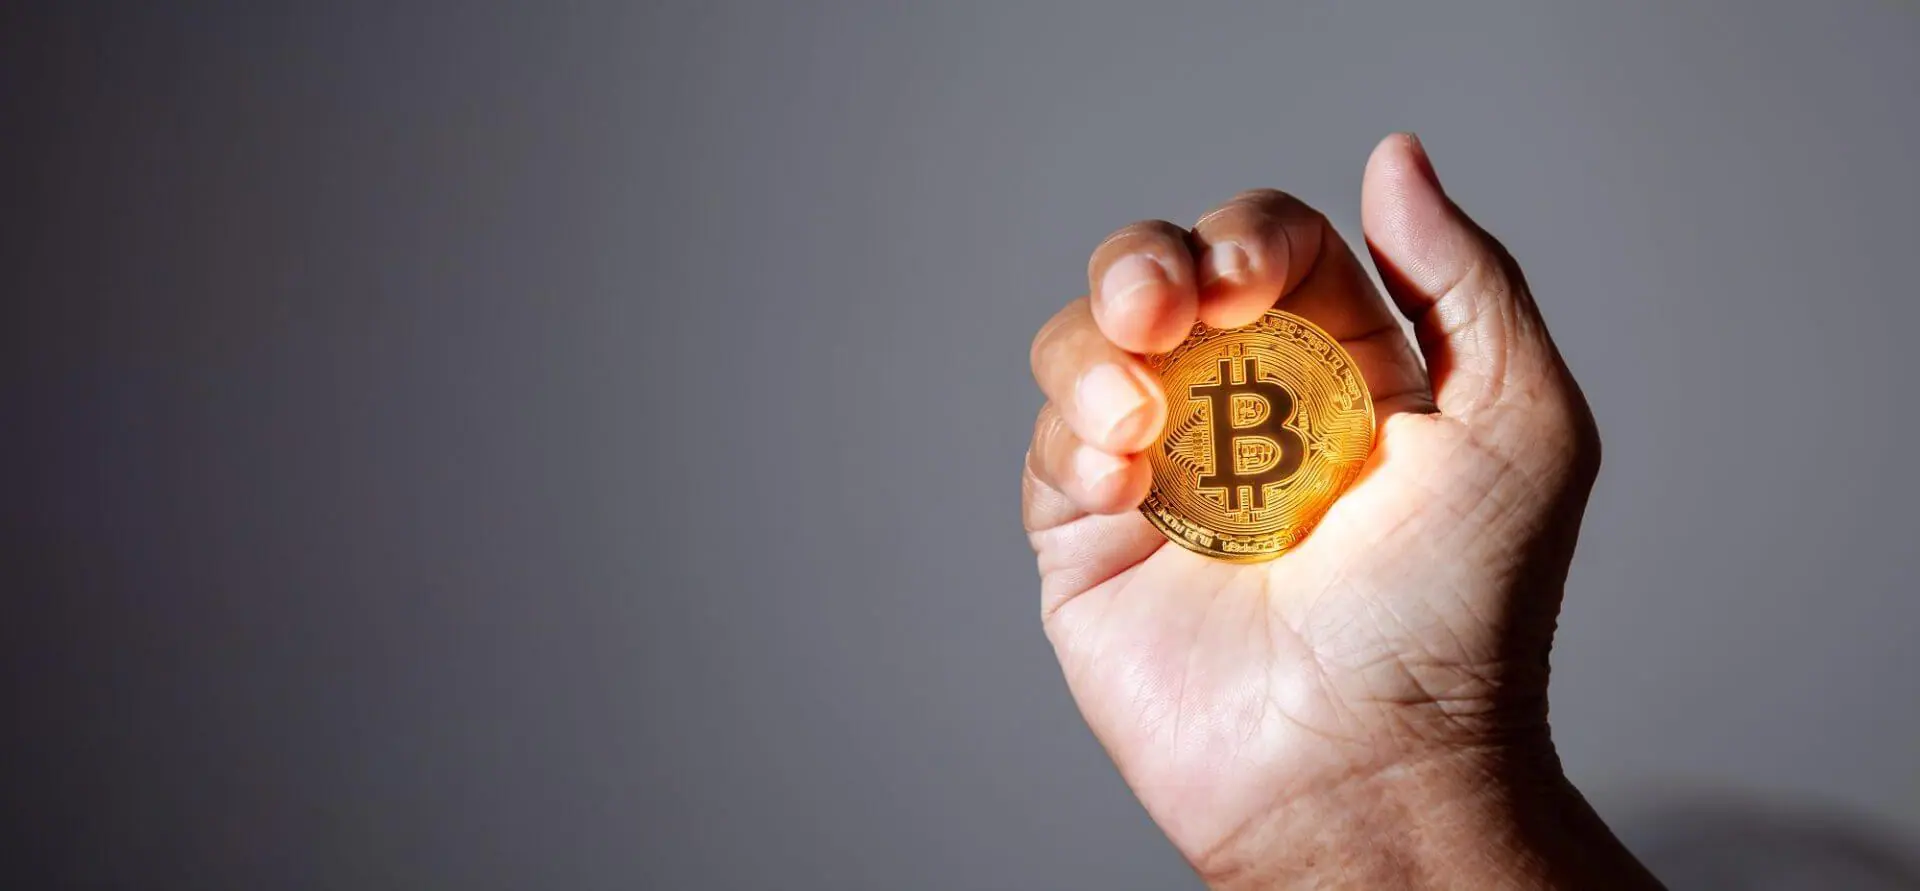 Duitse overheid verkoopt voor $195 miljoen aan Bitcoin